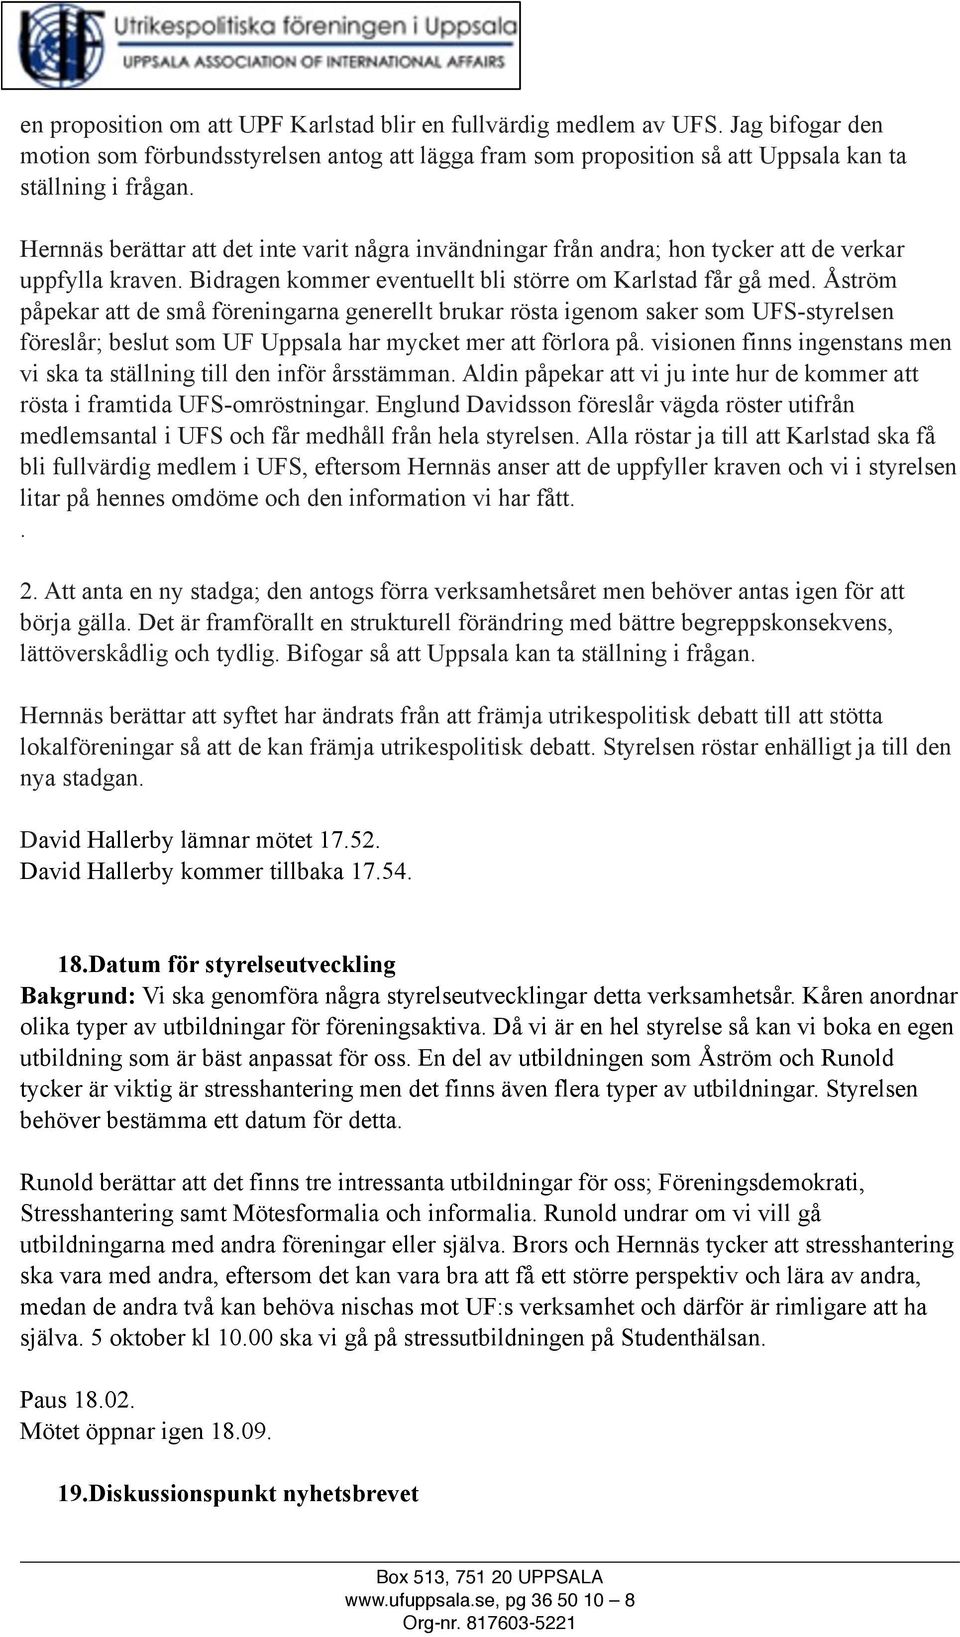 Åström påpekar att de små föreningarna generellt brukar rösta igenom saker som UFS-styrelsen föreslår; beslut som UF Uppsala har mycket mer att förlora på.